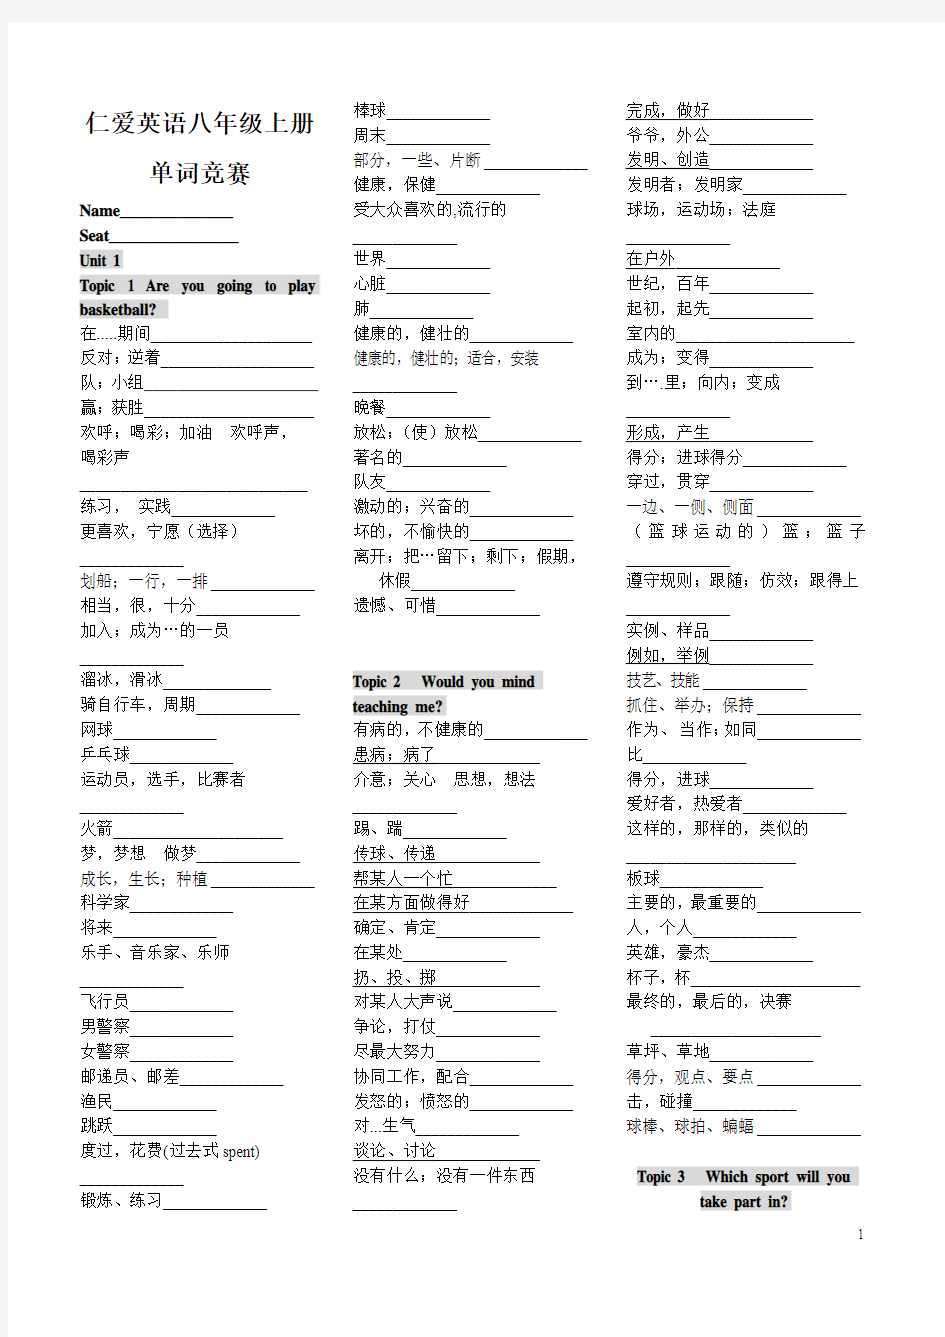 2013版仁爱英语八年级上册单词(全)汉译英练习